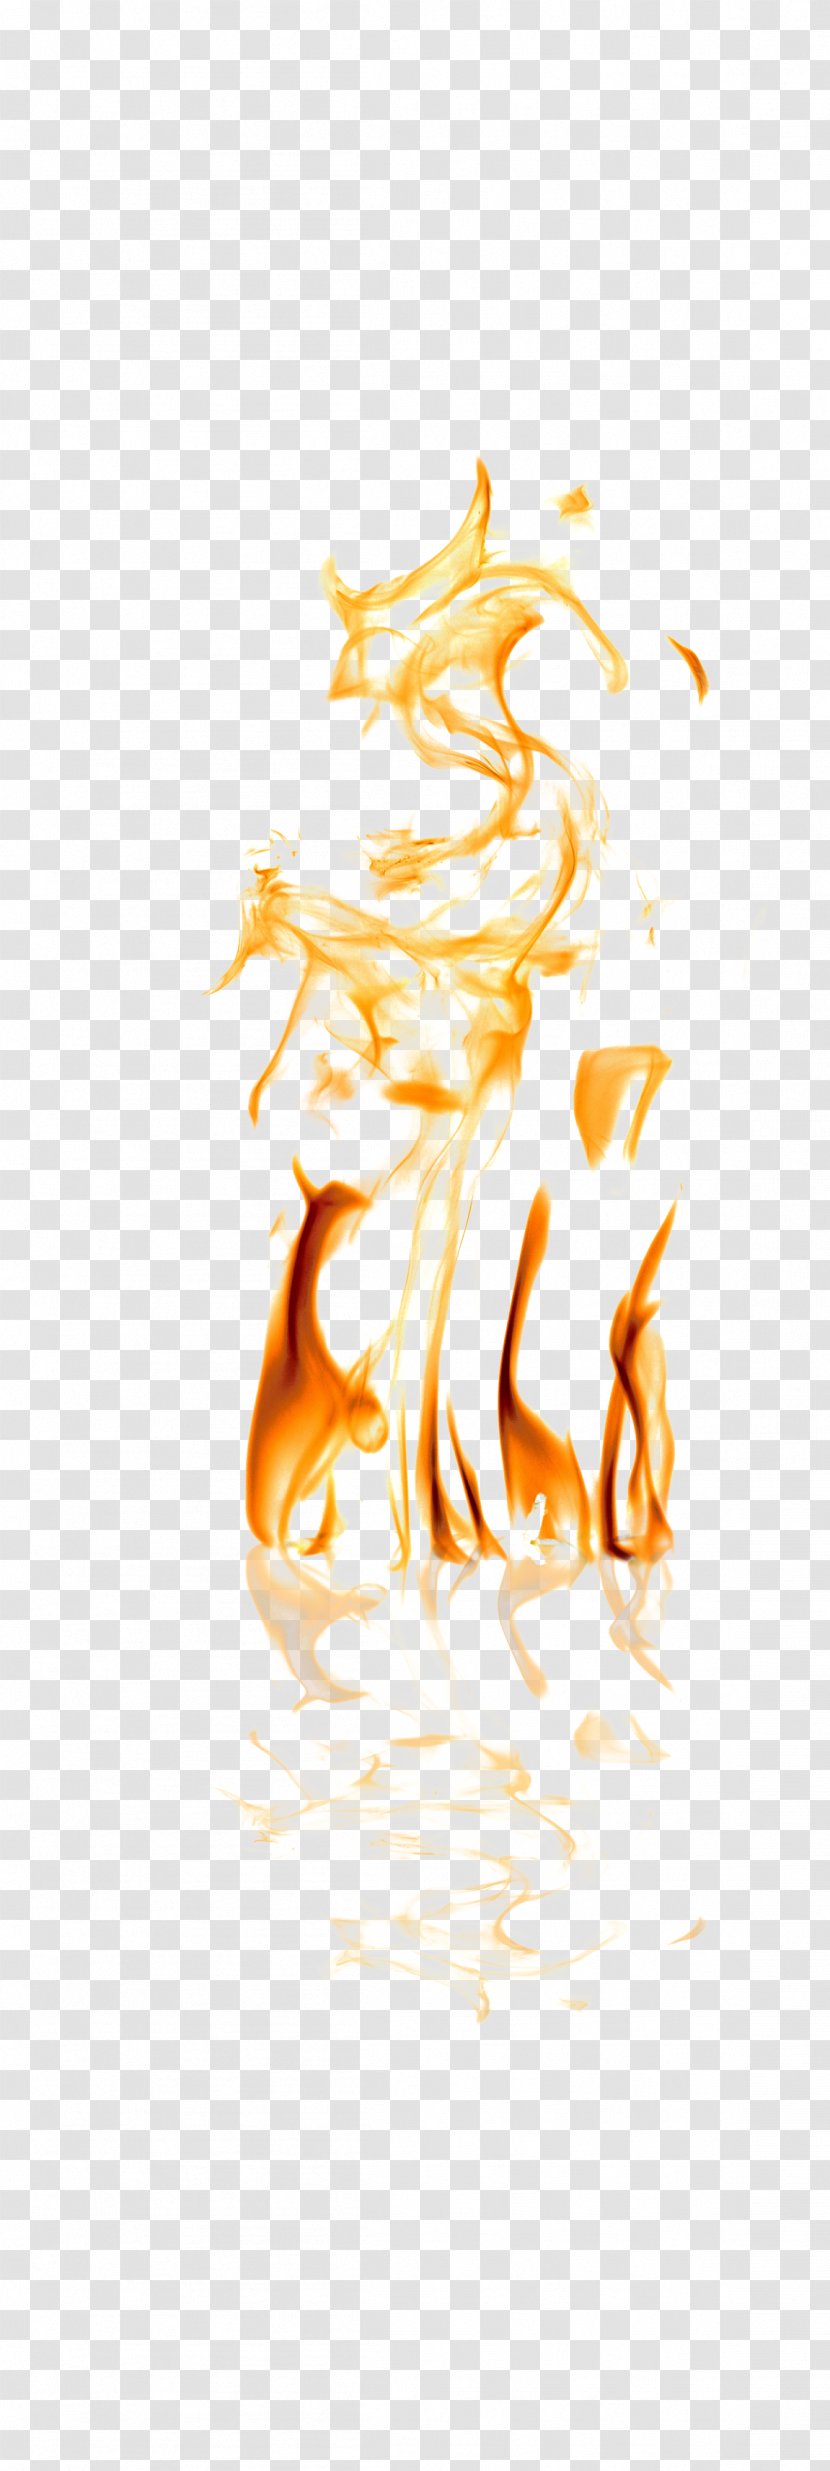 Light Clip Art - Artworks - Different Shapes Of Golden Flames Transparent PNG